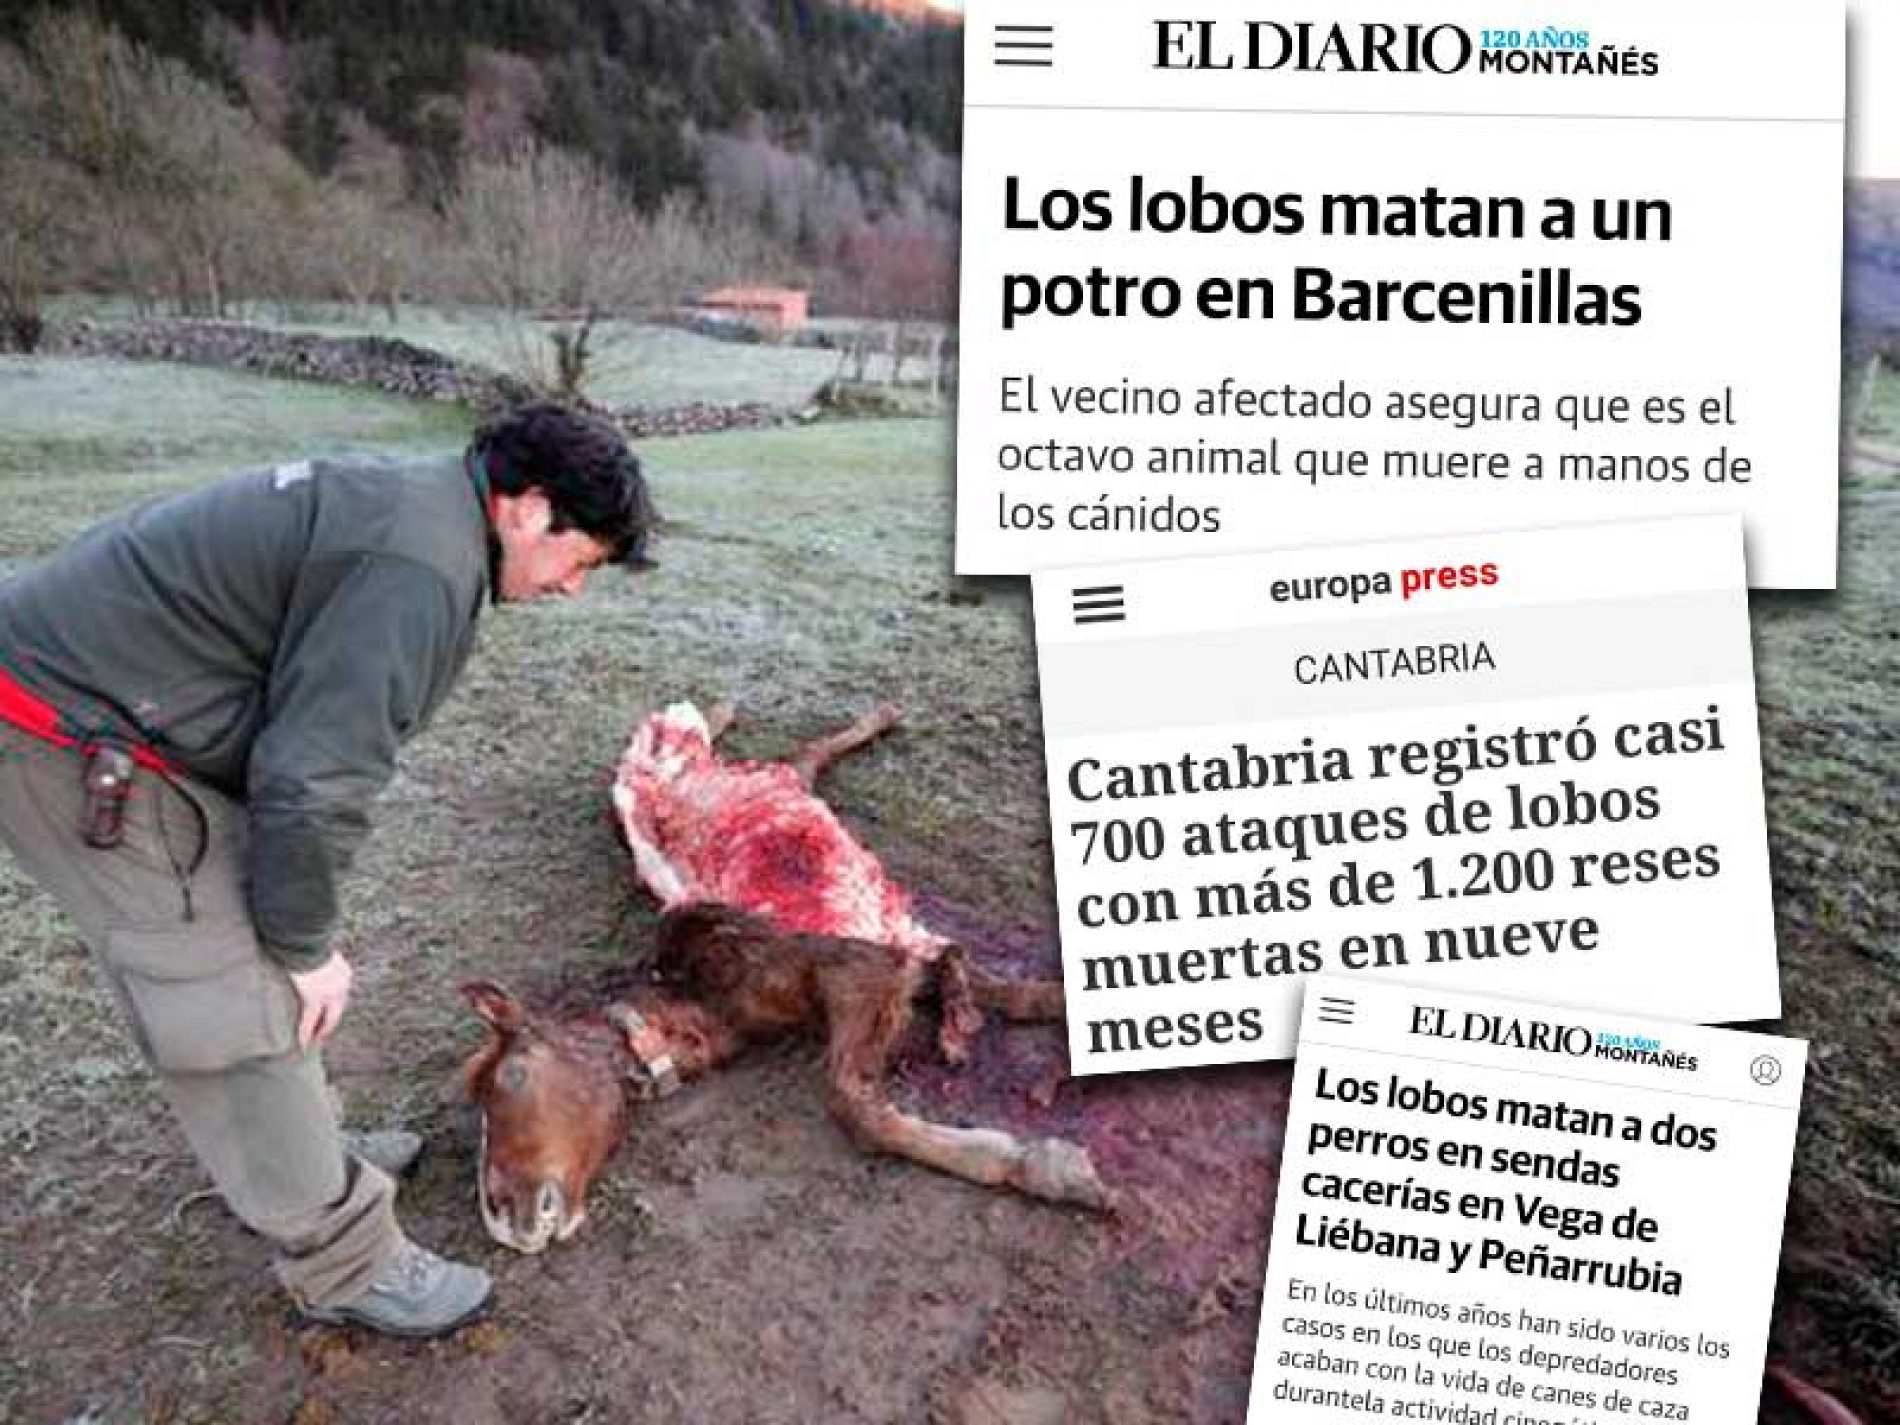 Cantabria quiere reanudar la caza de lobos pero una fundación animalista pide que se quede sin ayudas de Europa